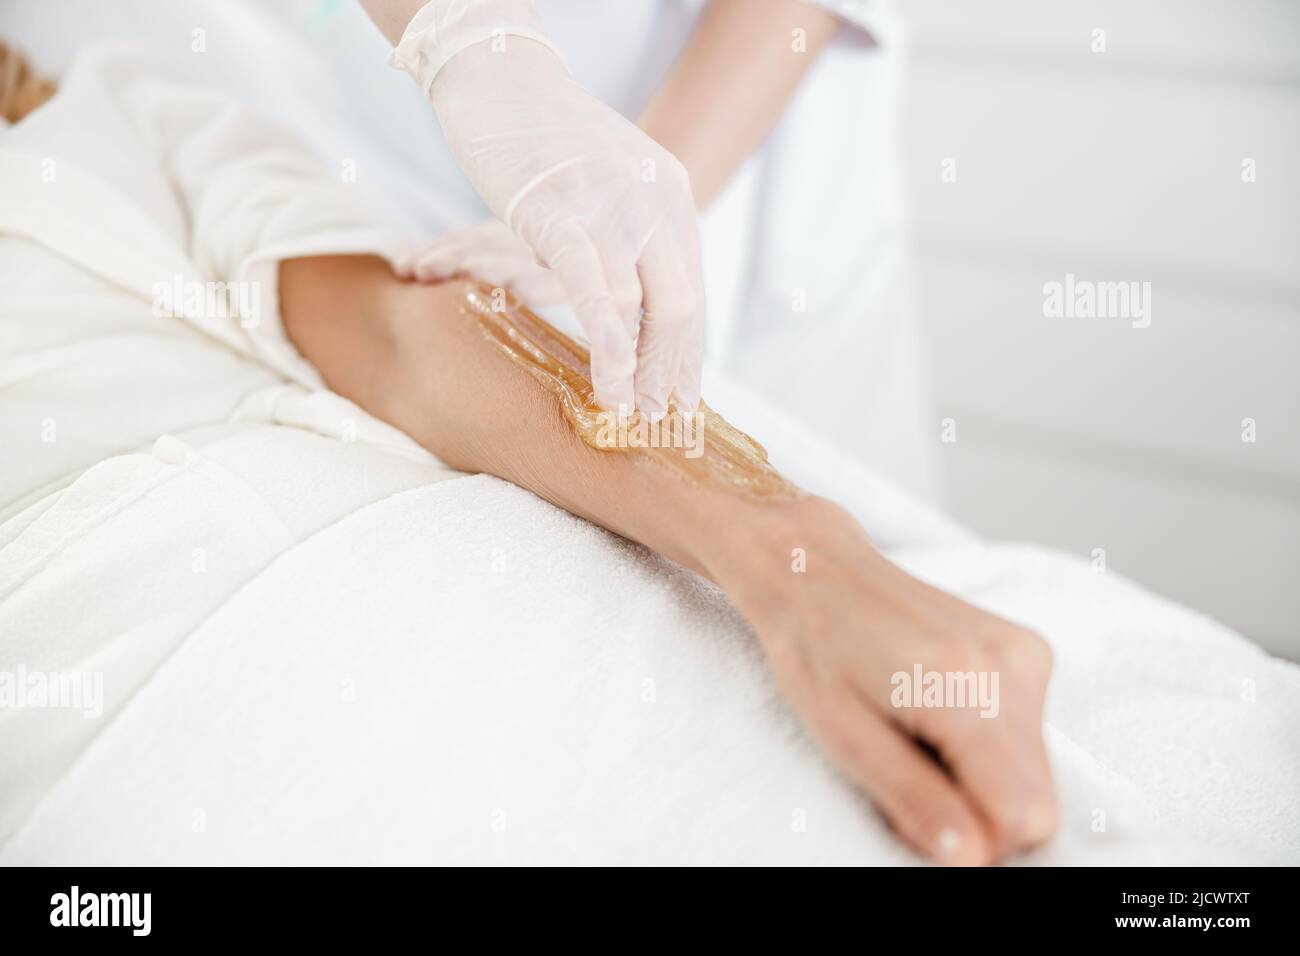 Professionnel fait des cheveux sugaring épilation sur la main femelle dans le centre de cosmétologie Banque D'Images